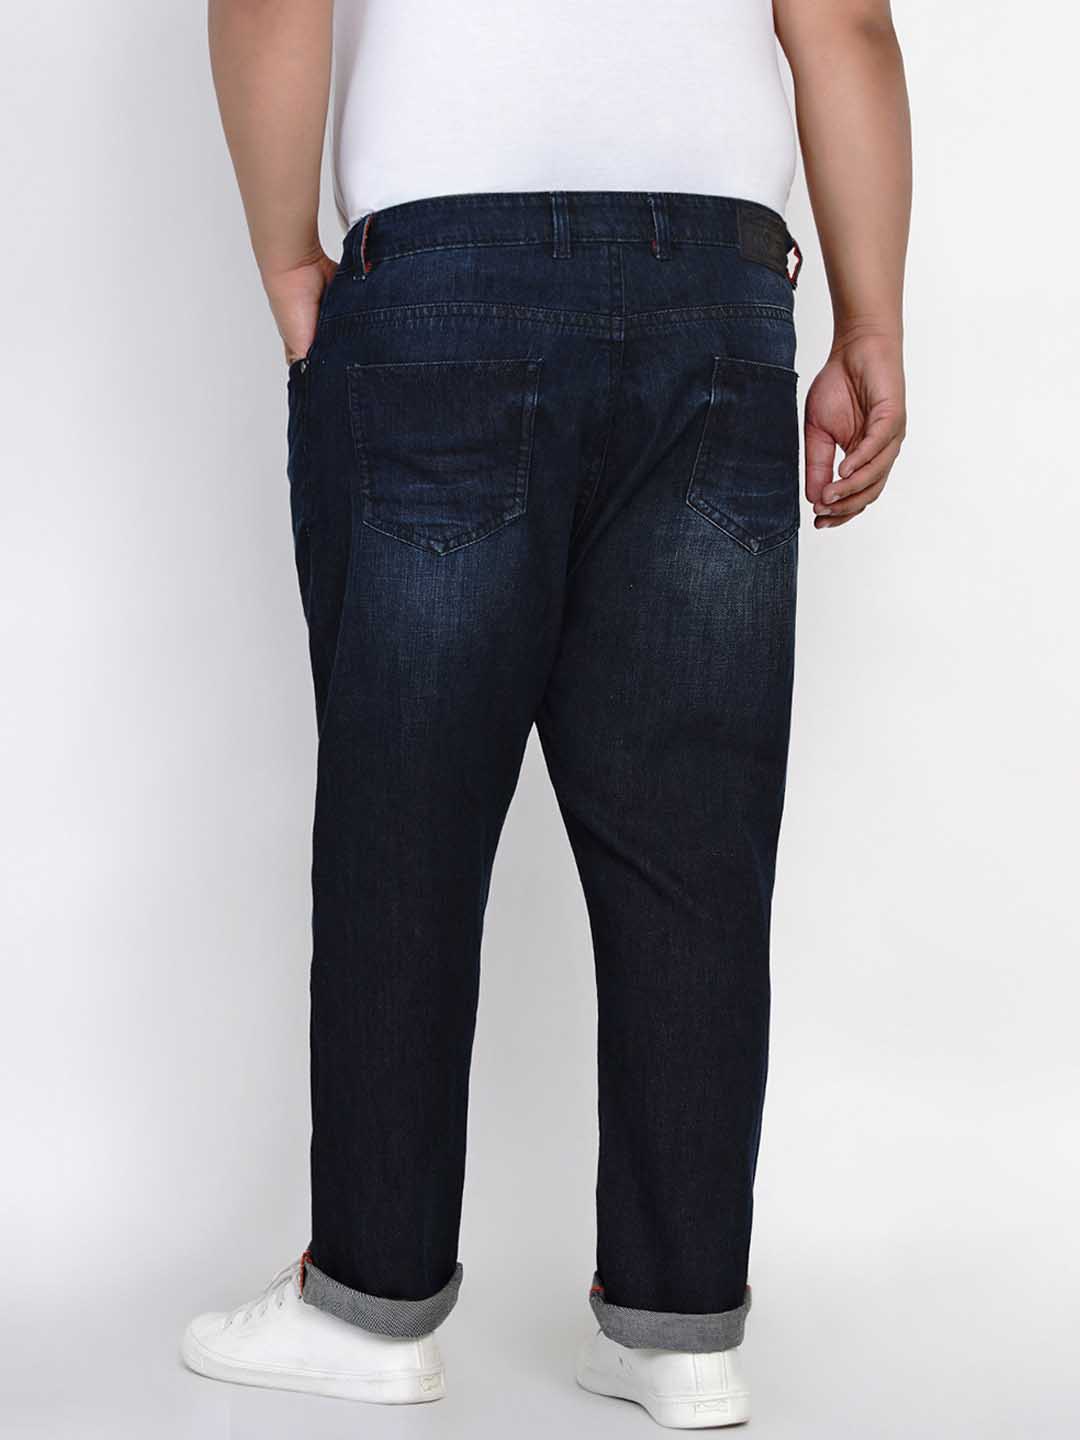 bottomwear/jeans/JPJ1281/jpj1281-4.jpg